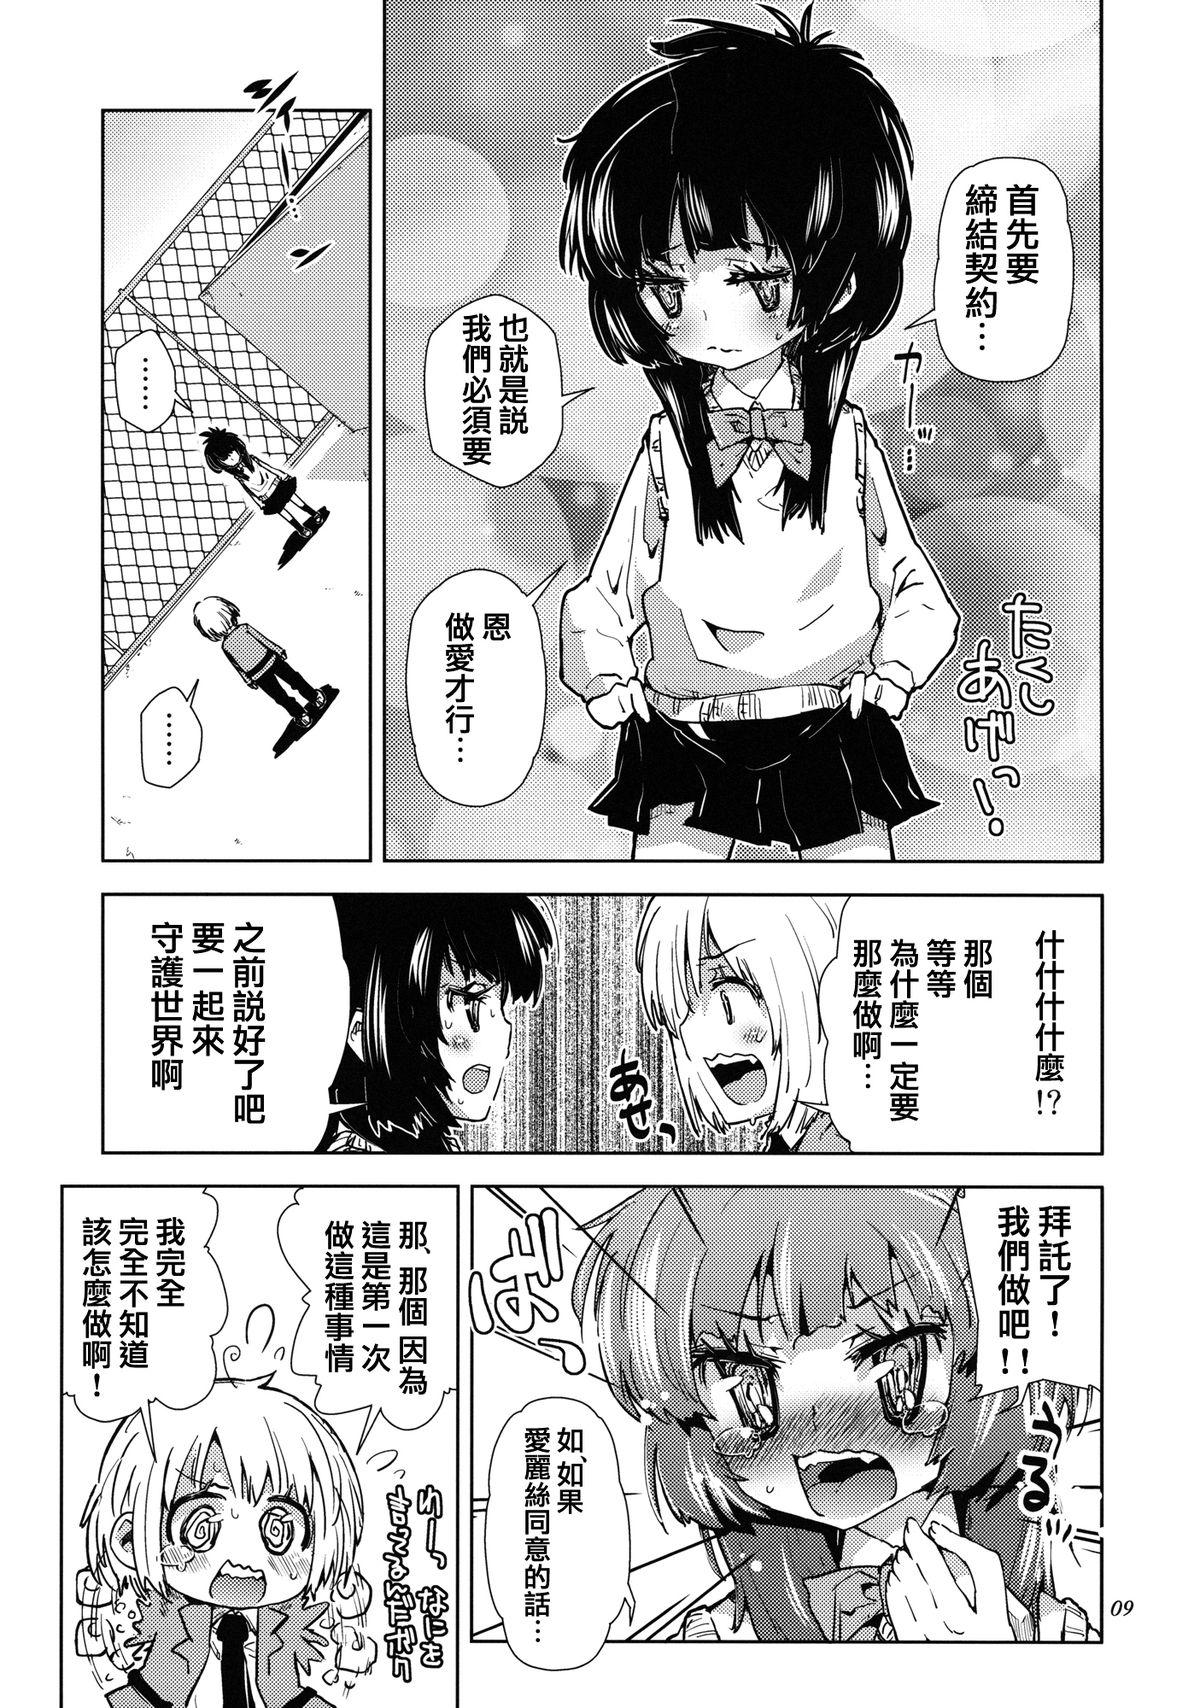 Ball Sucking Sekai ga Dou Toka itsu Chau Otoko no Musume wa Denpa Kawaii. Abg - Page 8